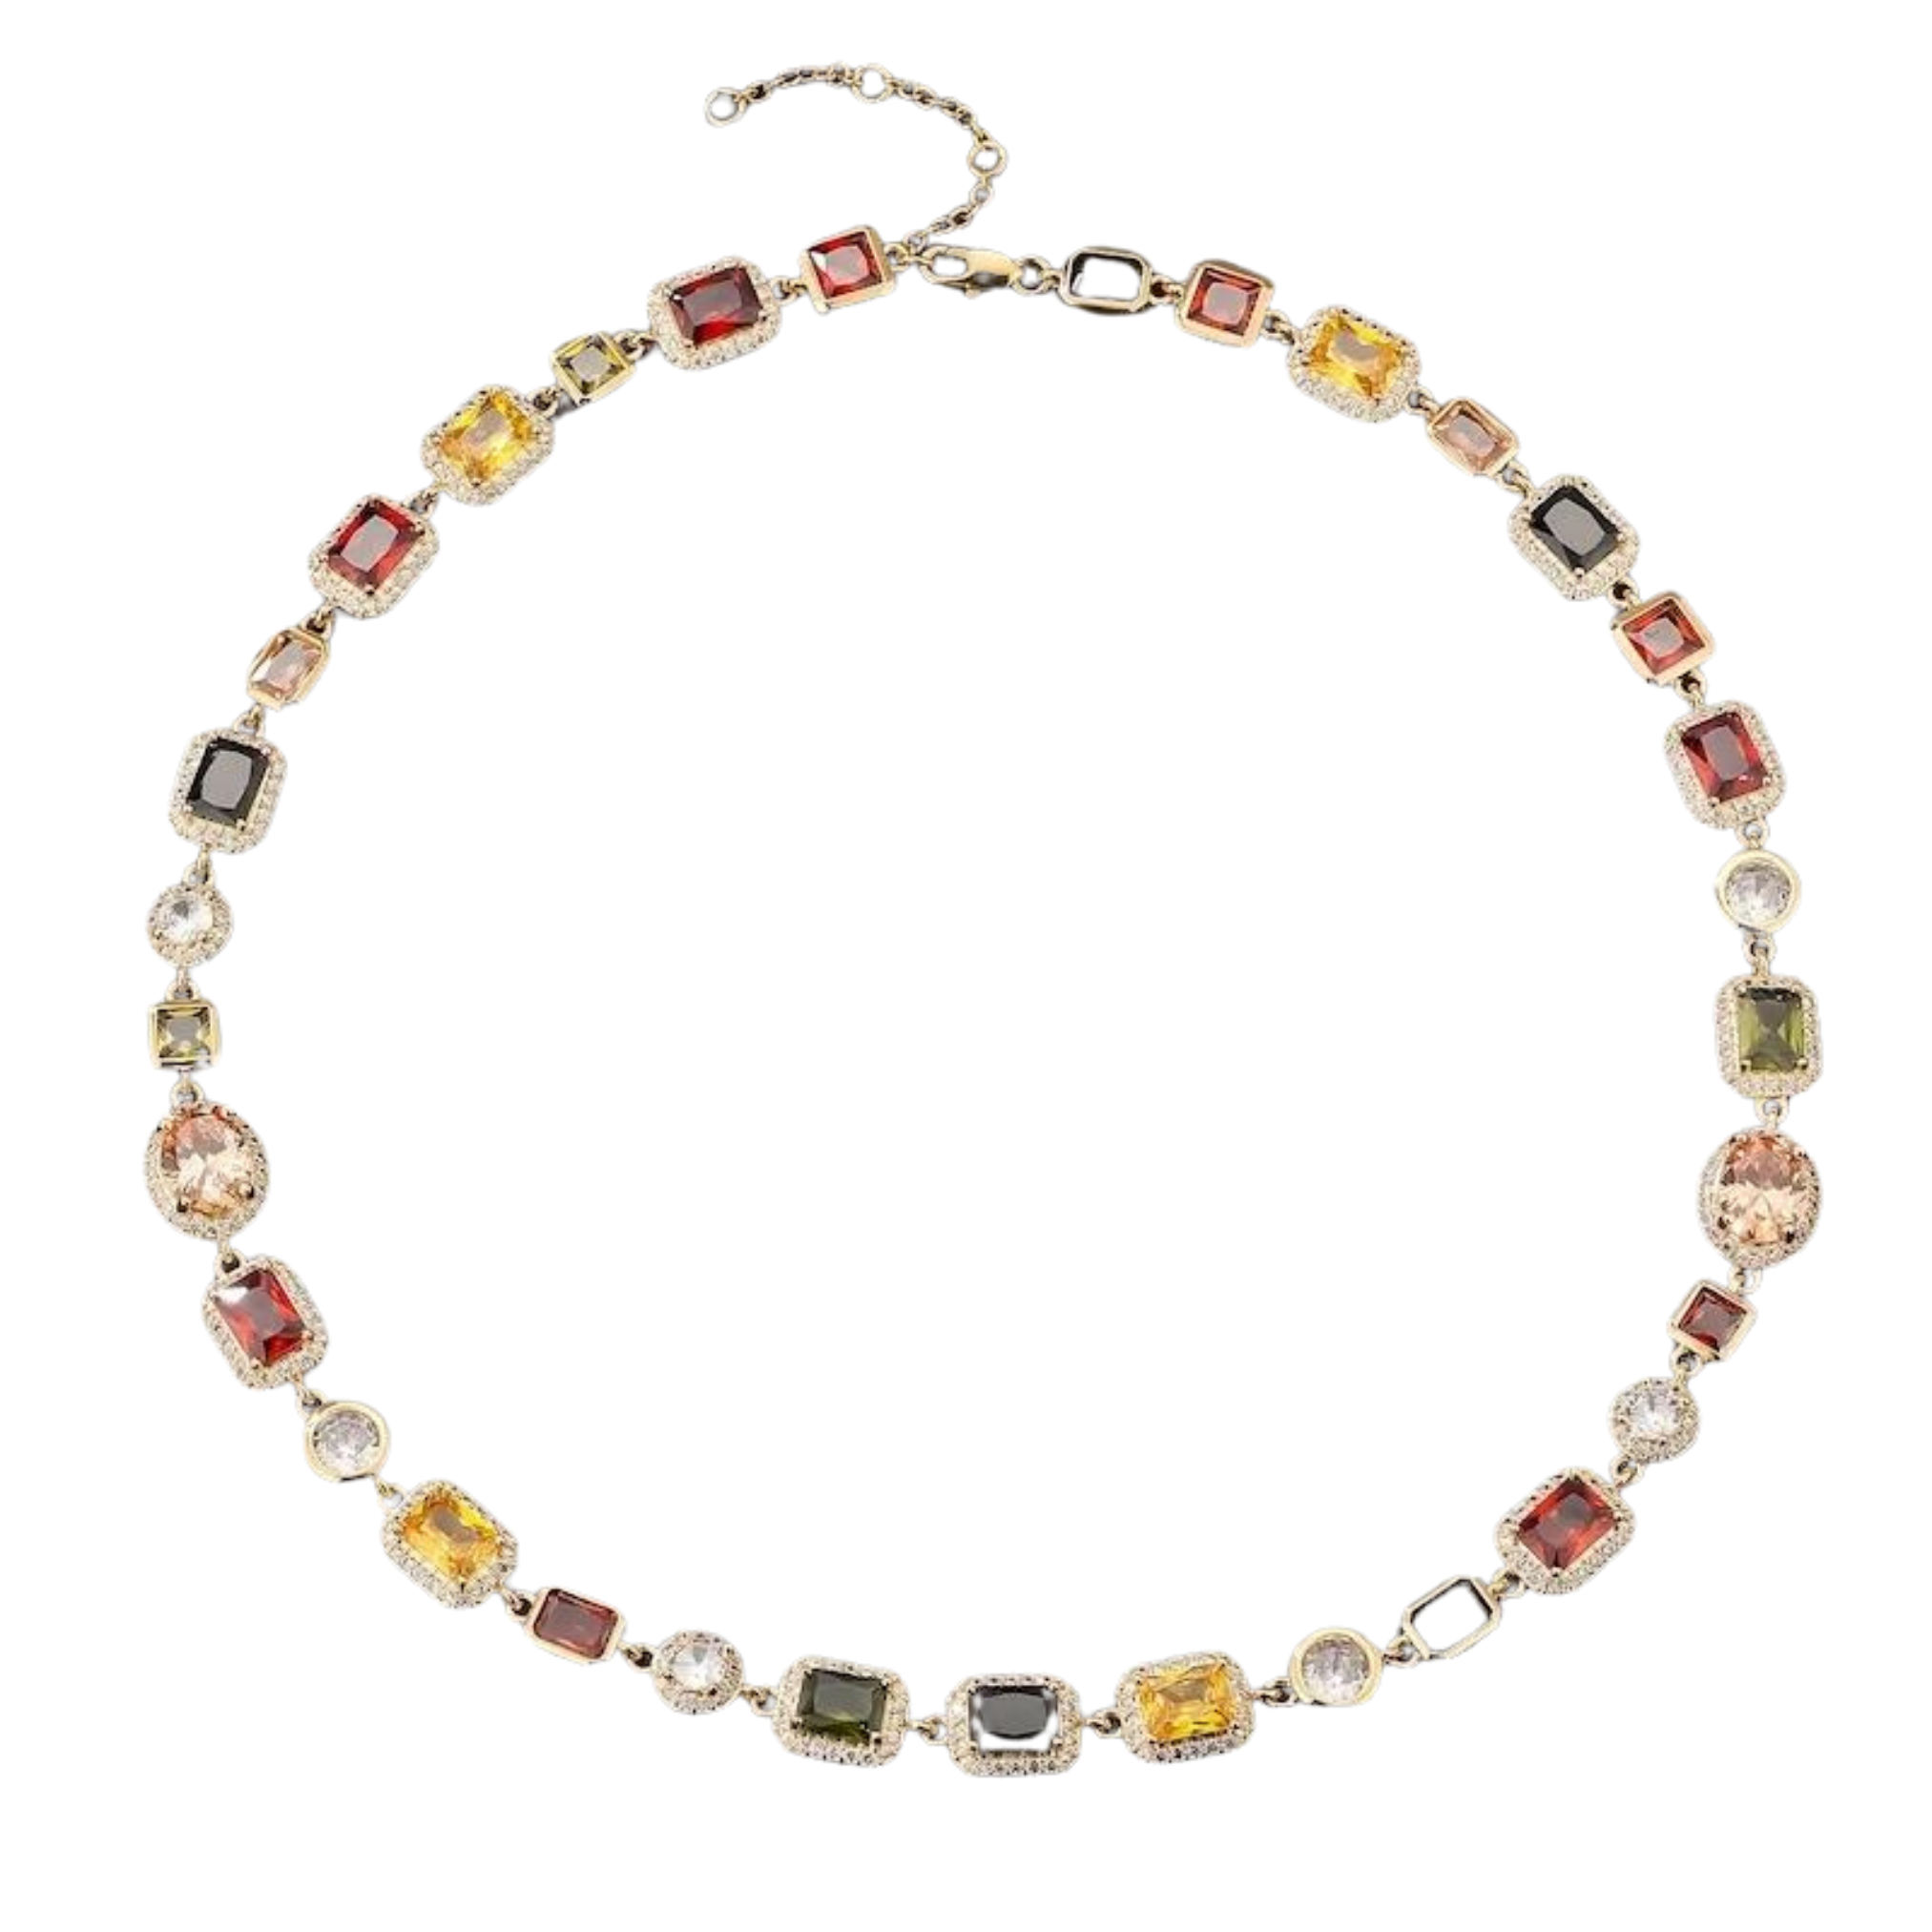 10MM Gemstone Necklace